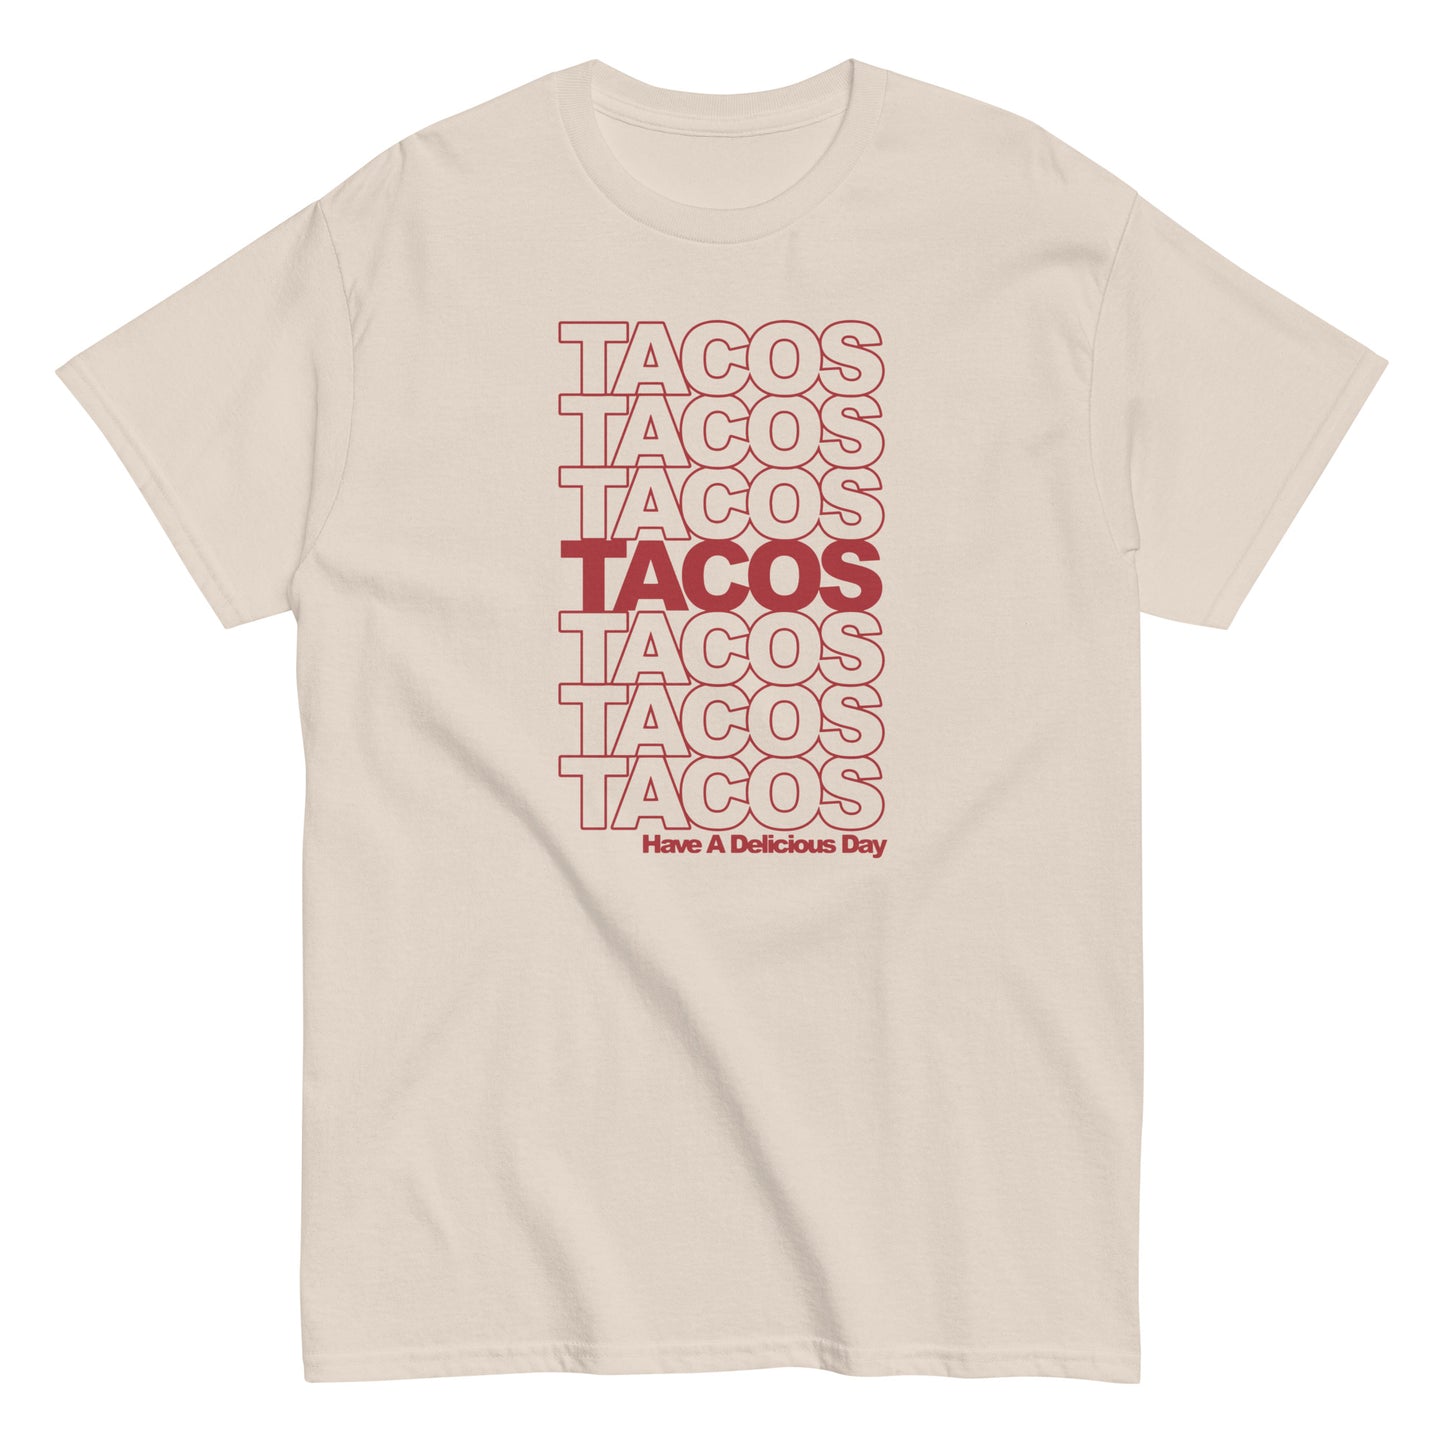 Tacos Tacos Tacos Men's Classic Tee